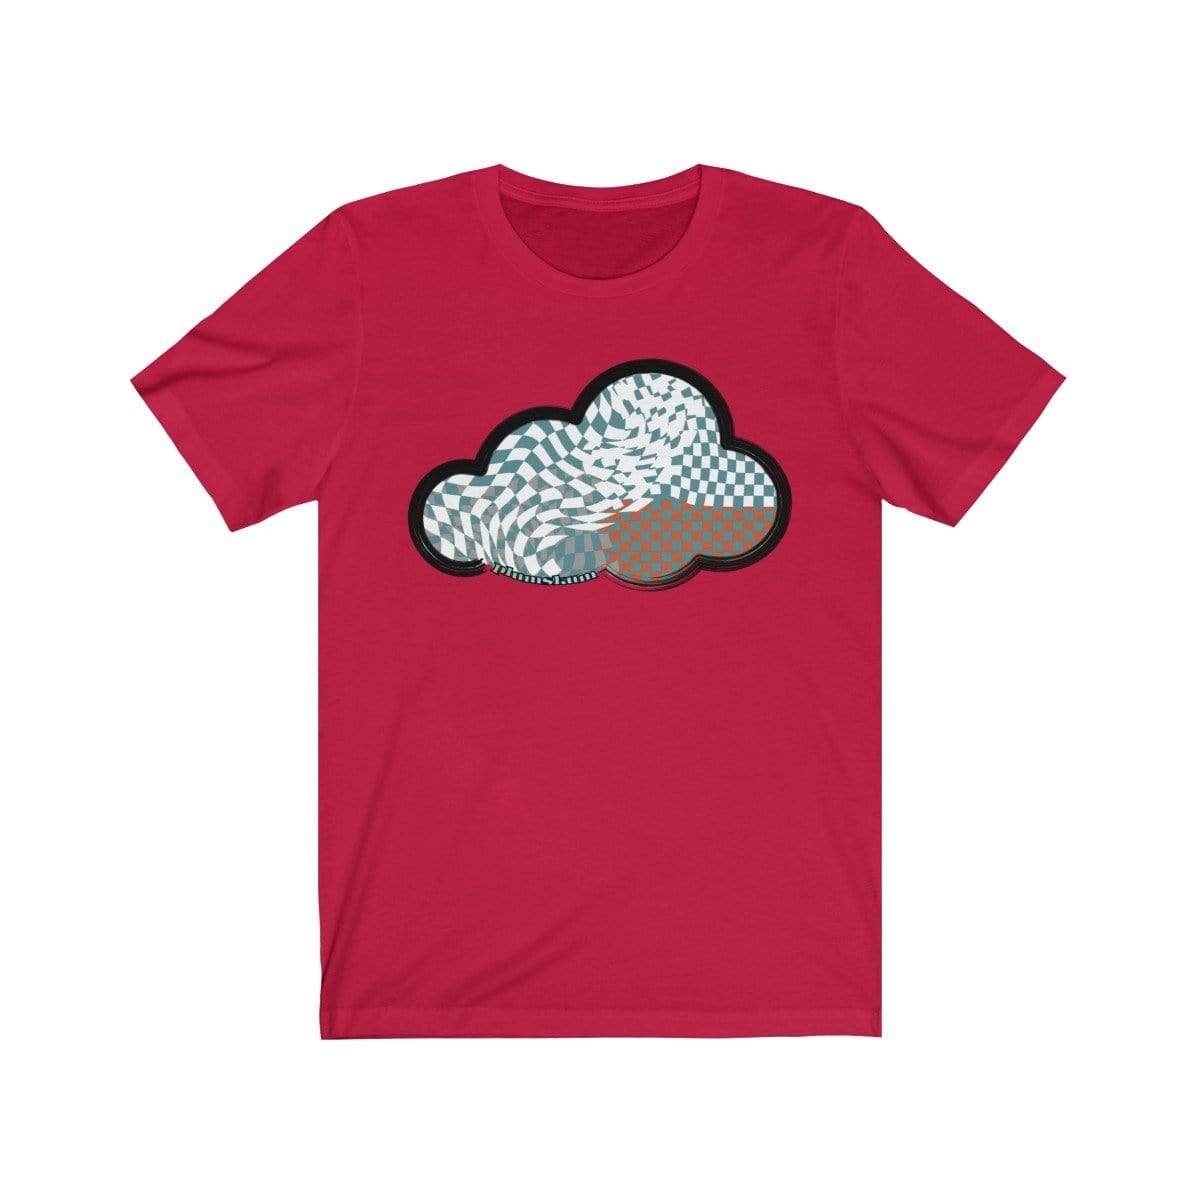 Printify T-Shirt Red / M Checker Art Clouds T-Shirt